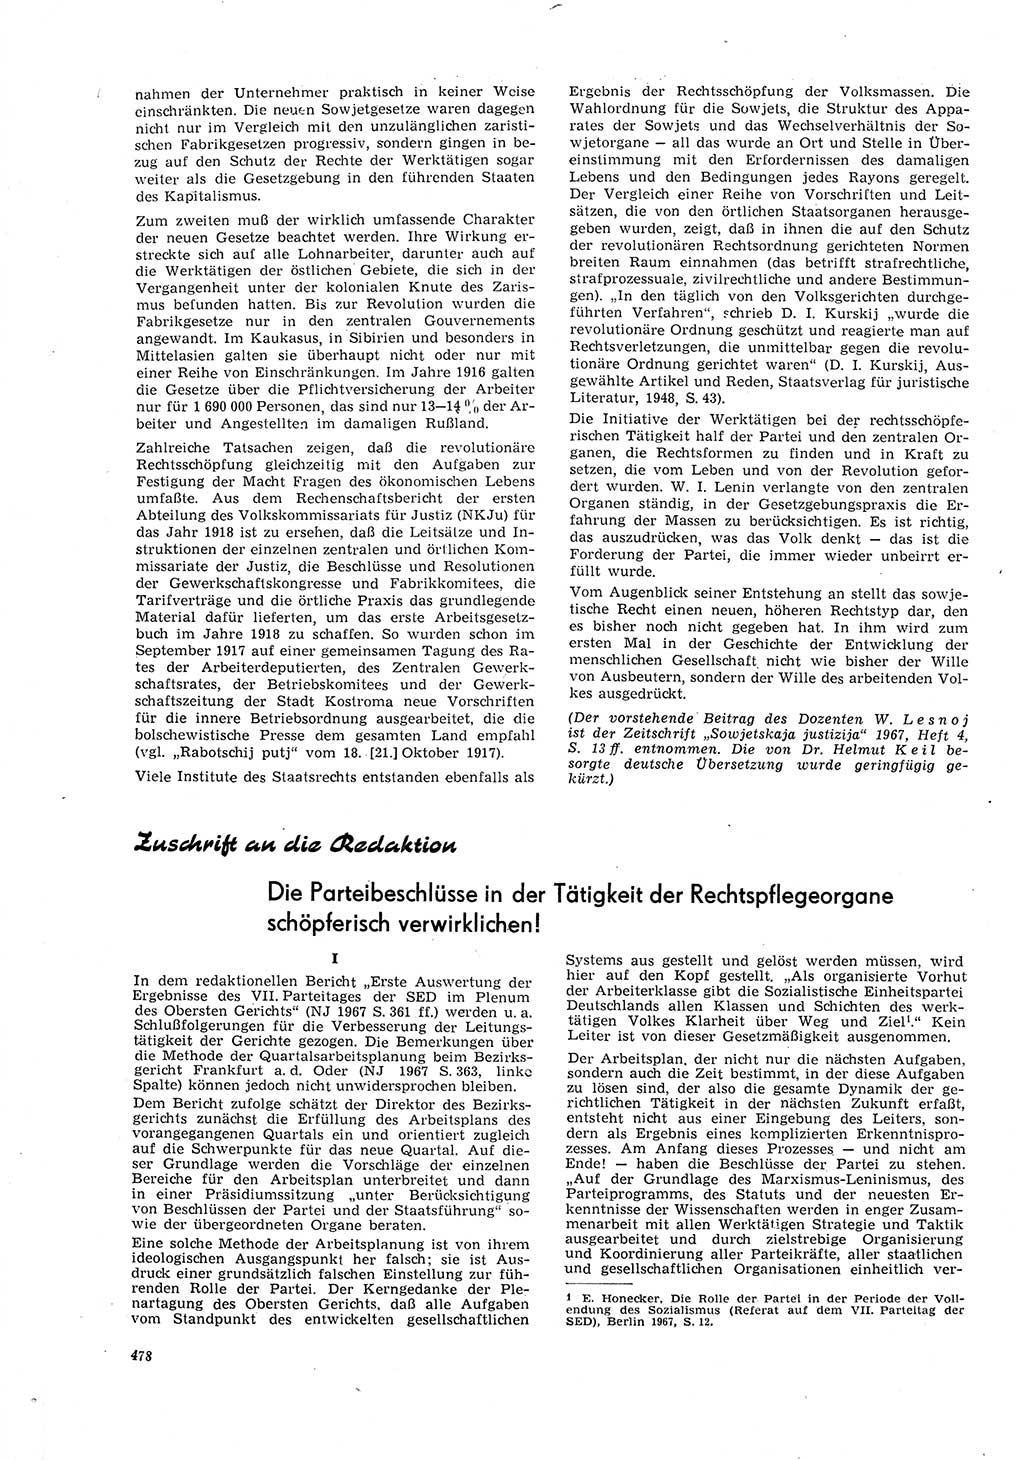 Neue Justiz (NJ), Zeitschrift für Recht und Rechtswissenschaft [Deutsche Demokratische Republik (DDR)], 21. Jahrgang 1967, Seite 478 (NJ DDR 1967, S. 478)